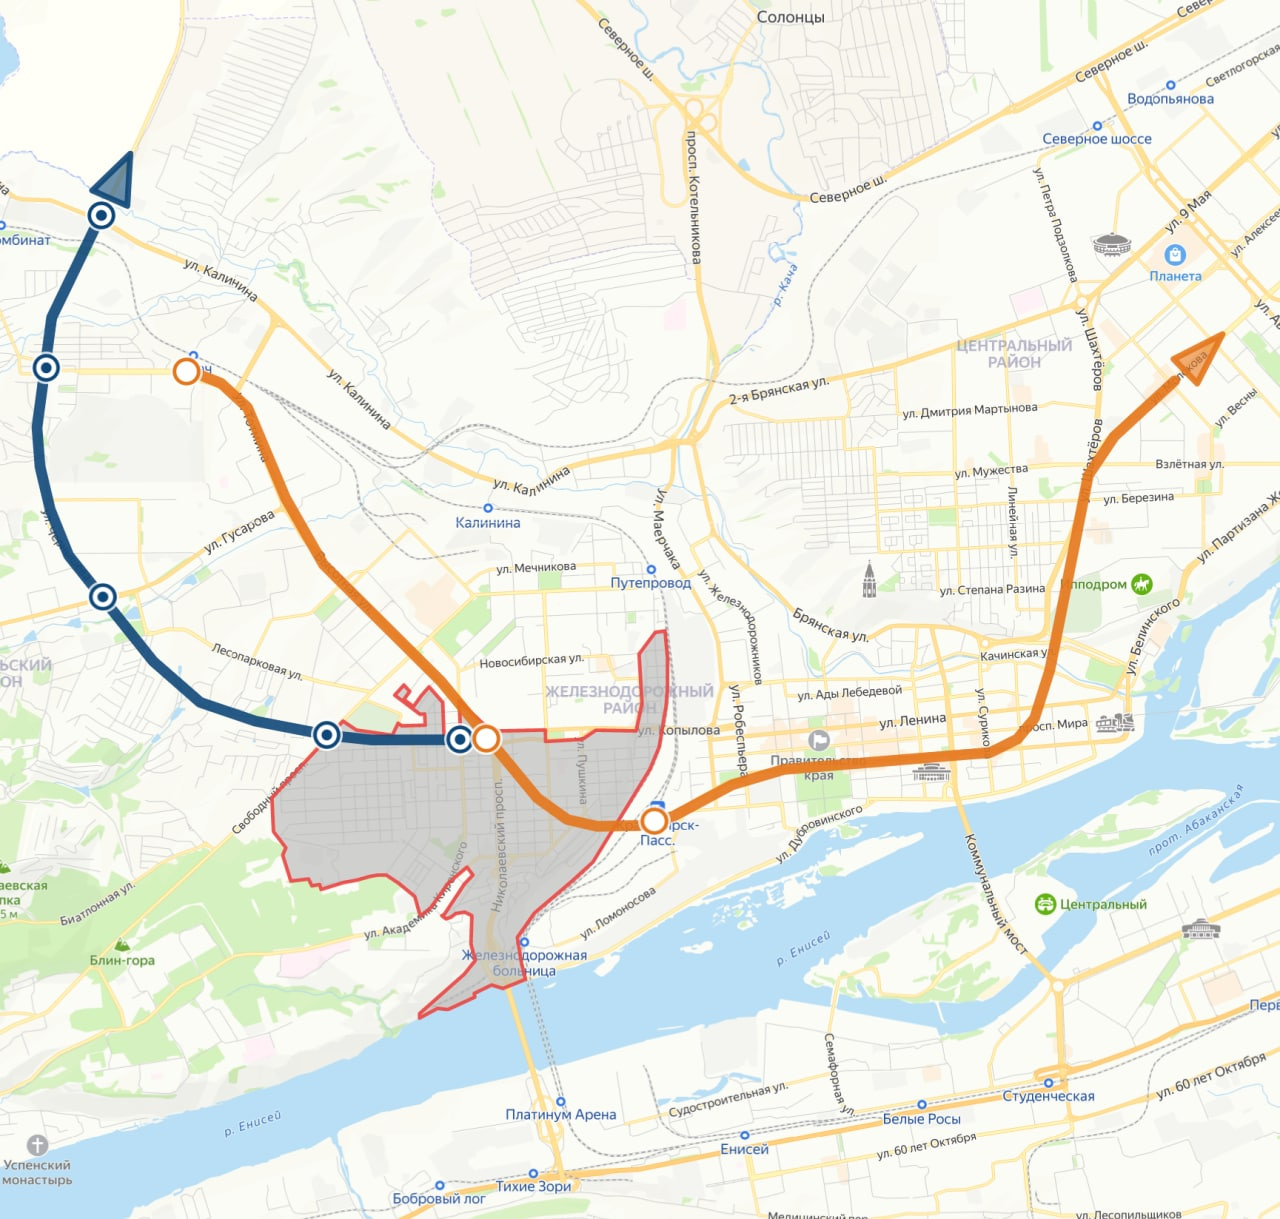 Границы Николаевки, трасса так необходимой нам городской магистрали с пересечениями главных улиц и фрагмент линии метро с пересадочными узлами